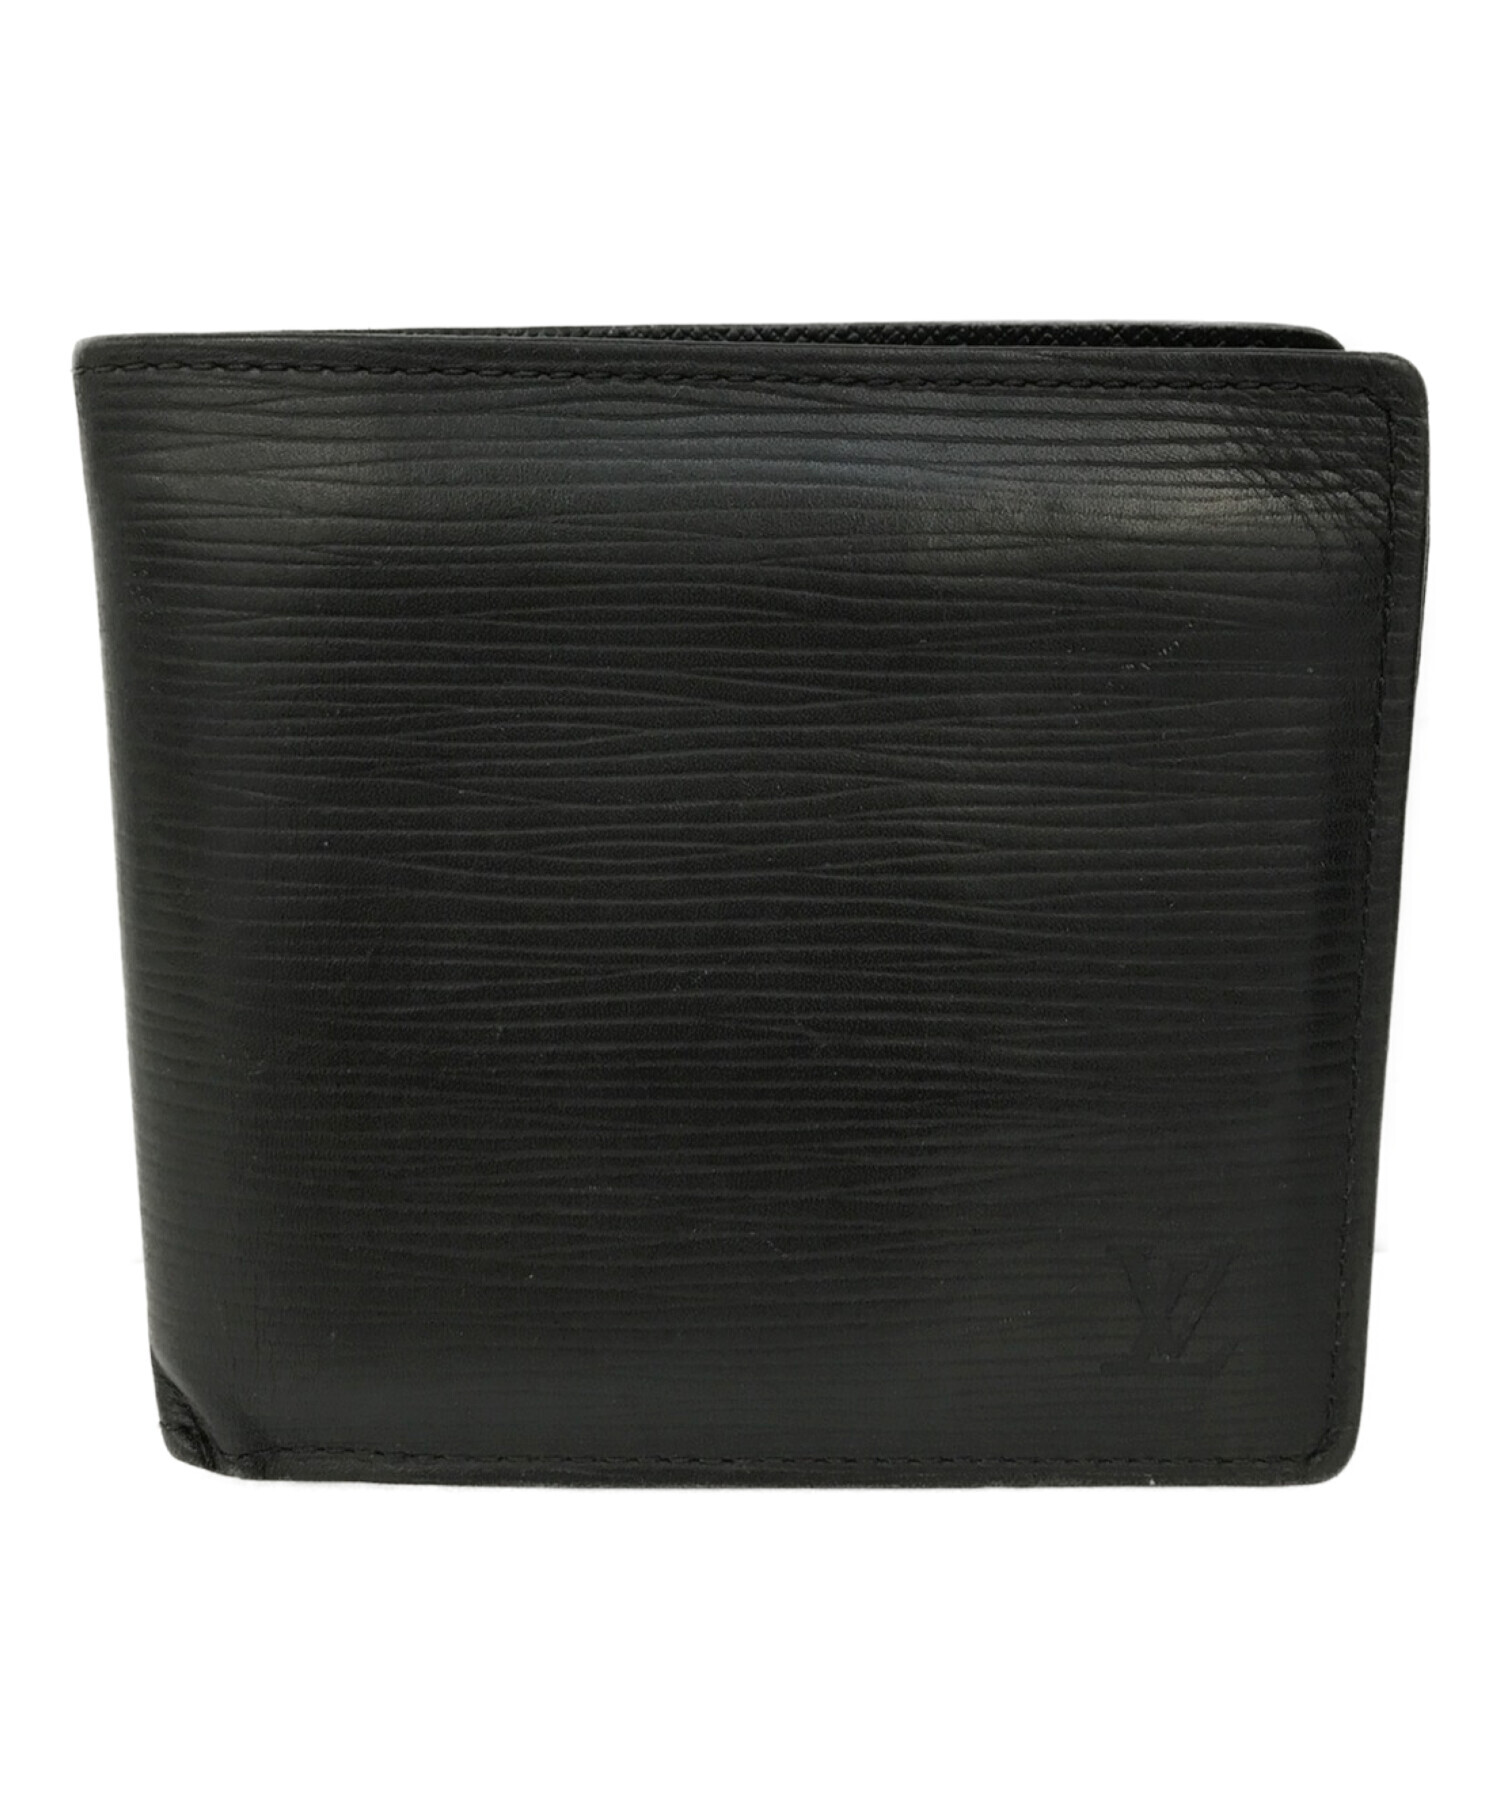 Louis Vuitton エピブラック 二つ折り財布